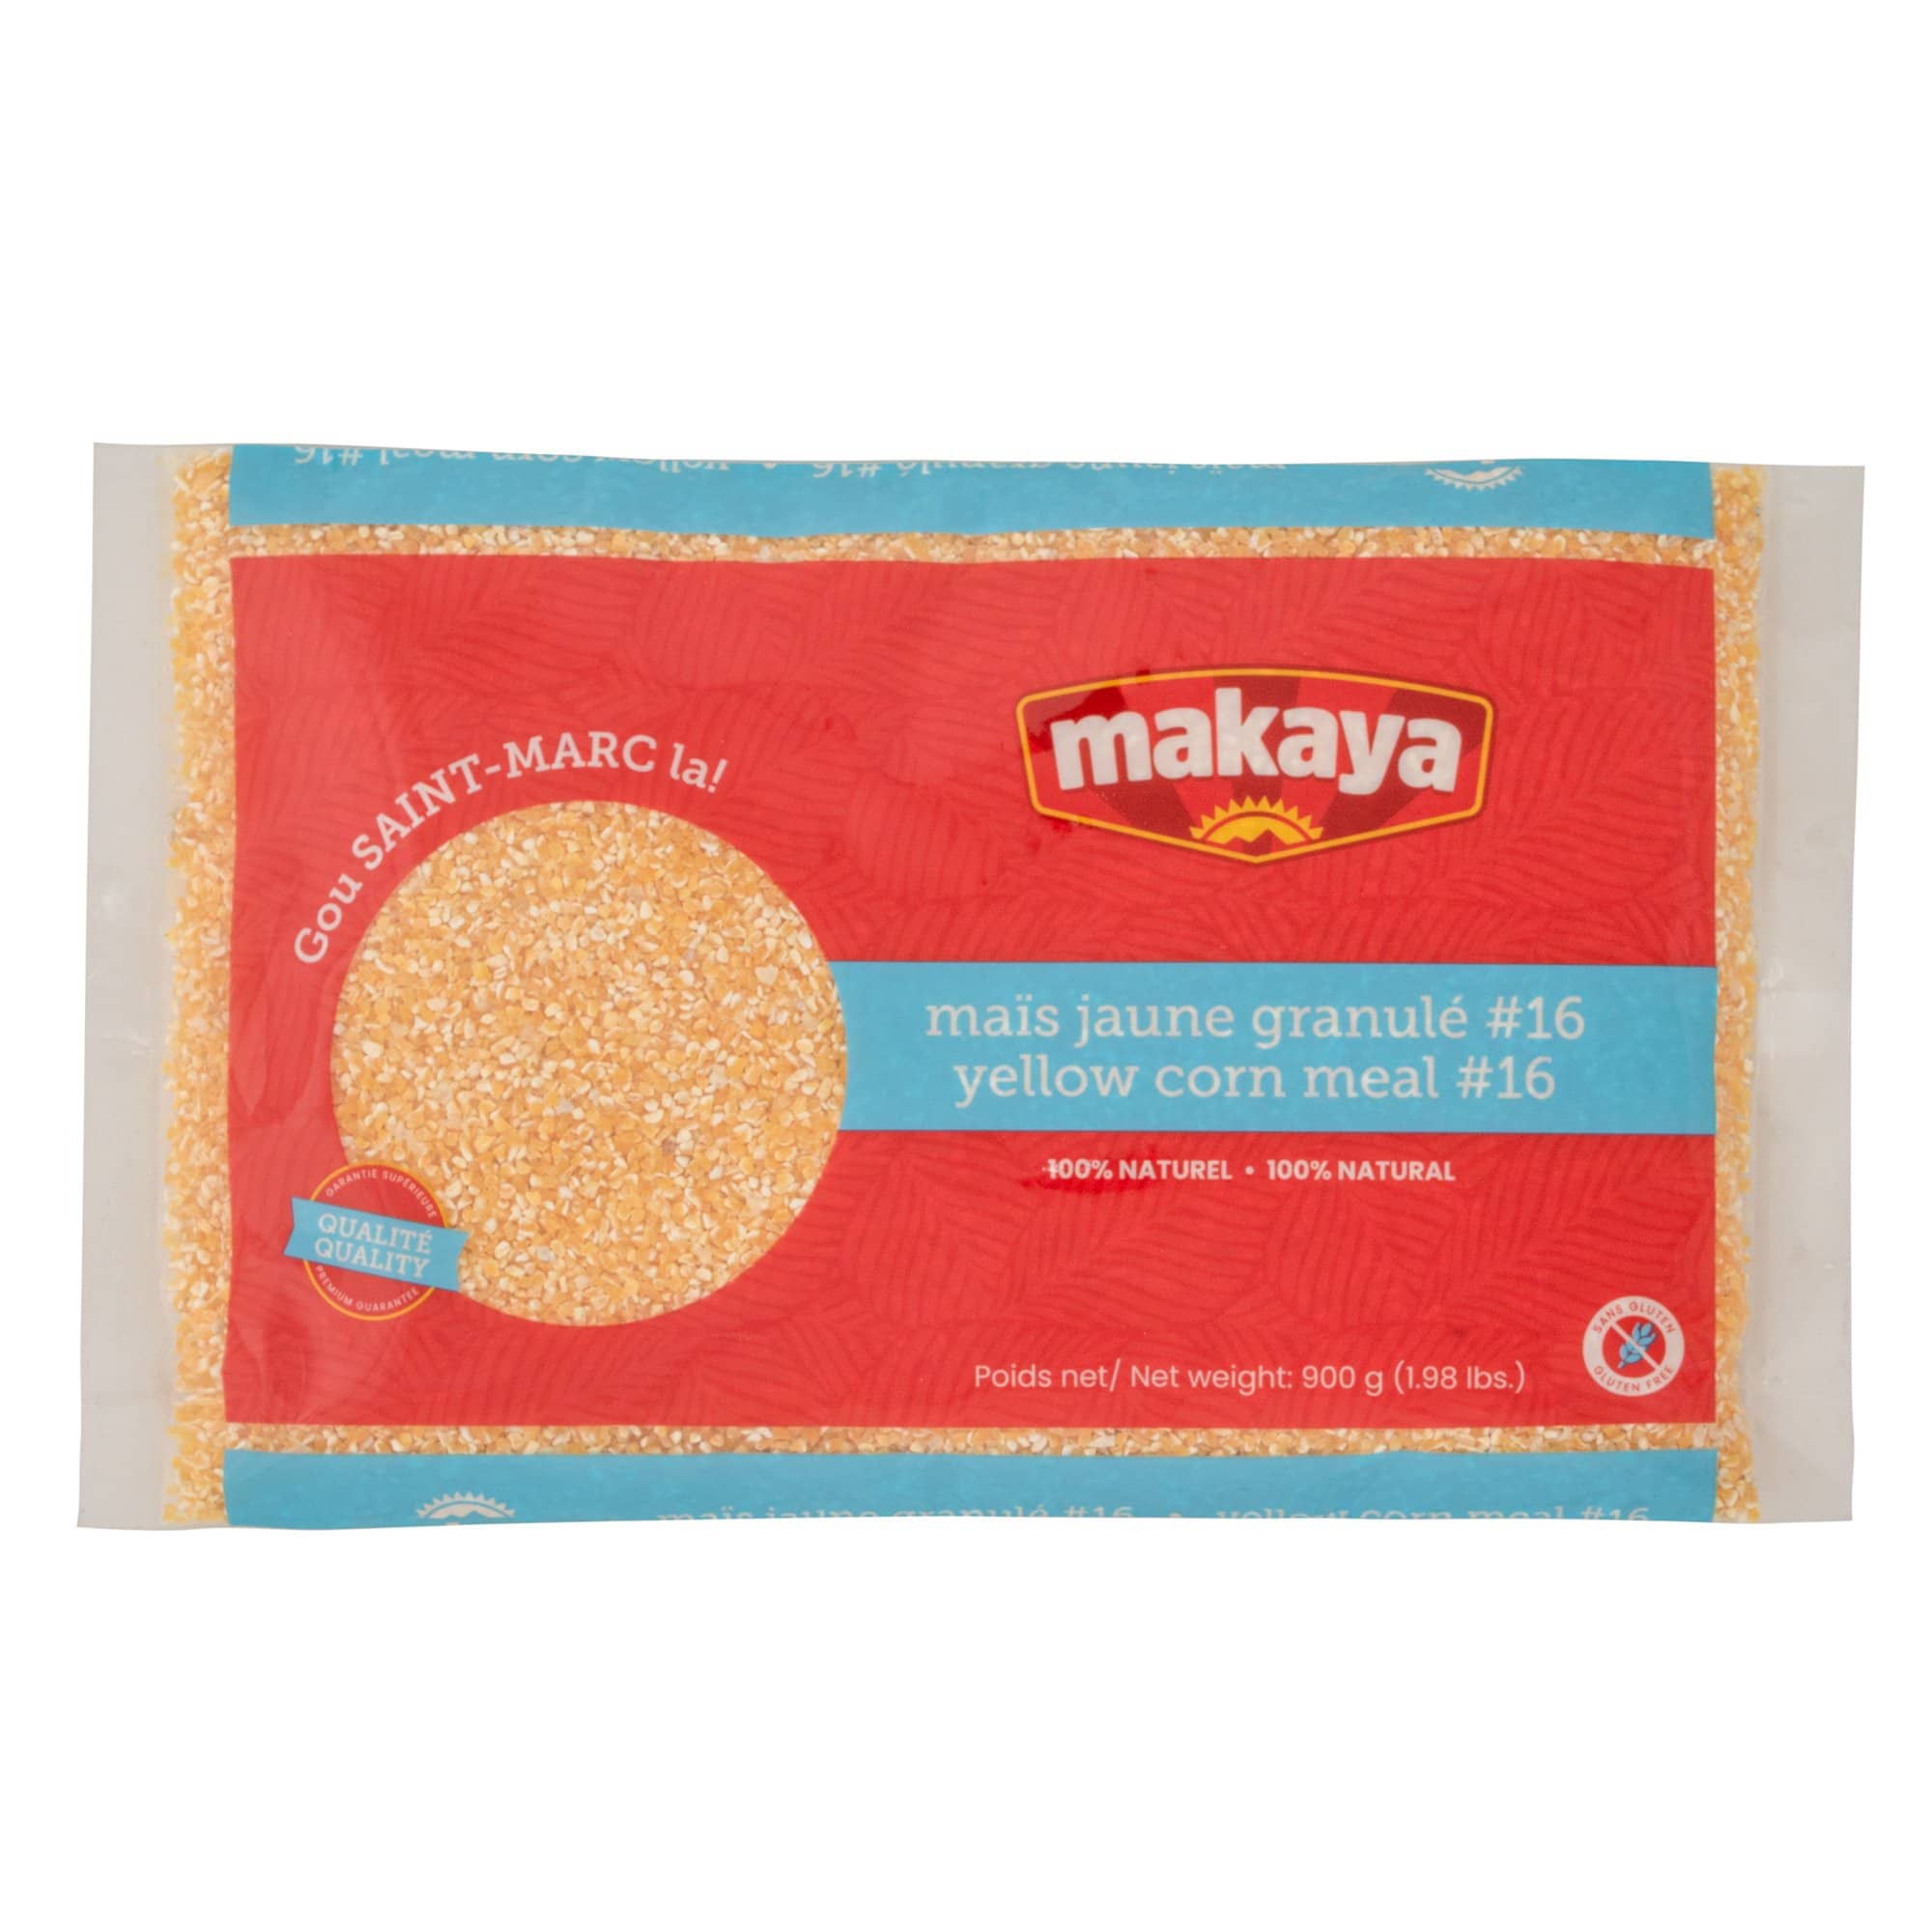 Makaya - Maïs jaune granulé #16 (2lbs)